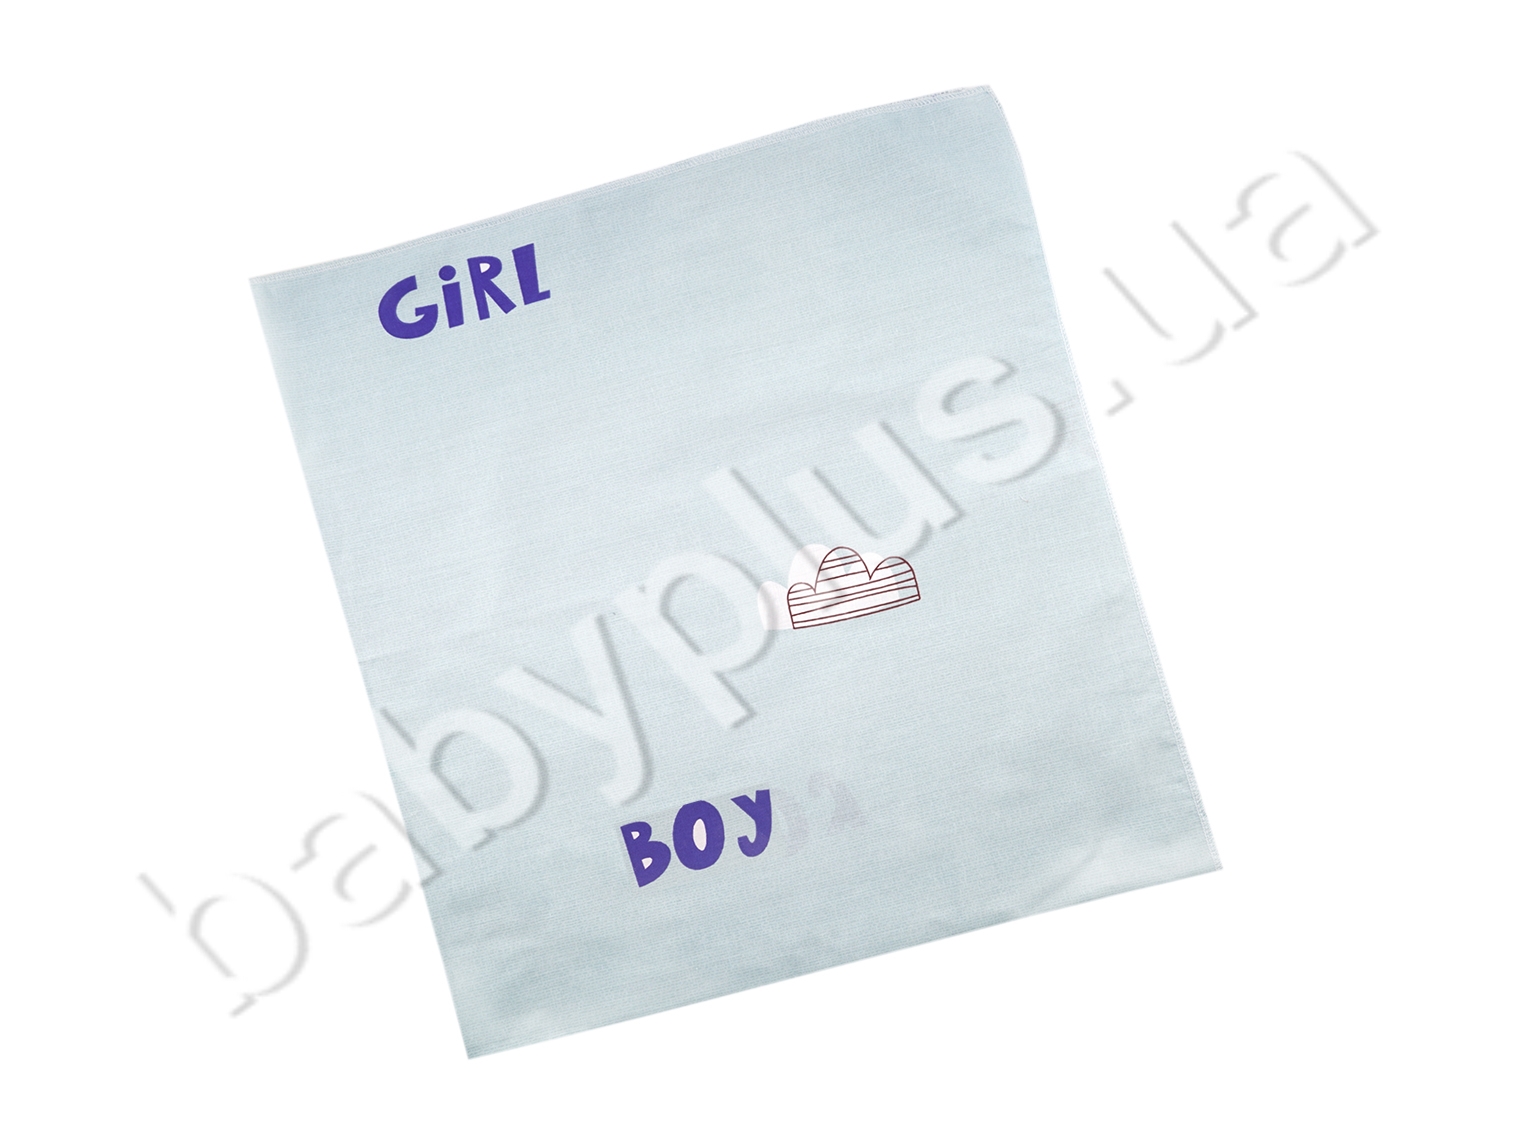 Простынь-пеленка Boy and Girl на голубом. 100% хлопок. Размер 100х110 см